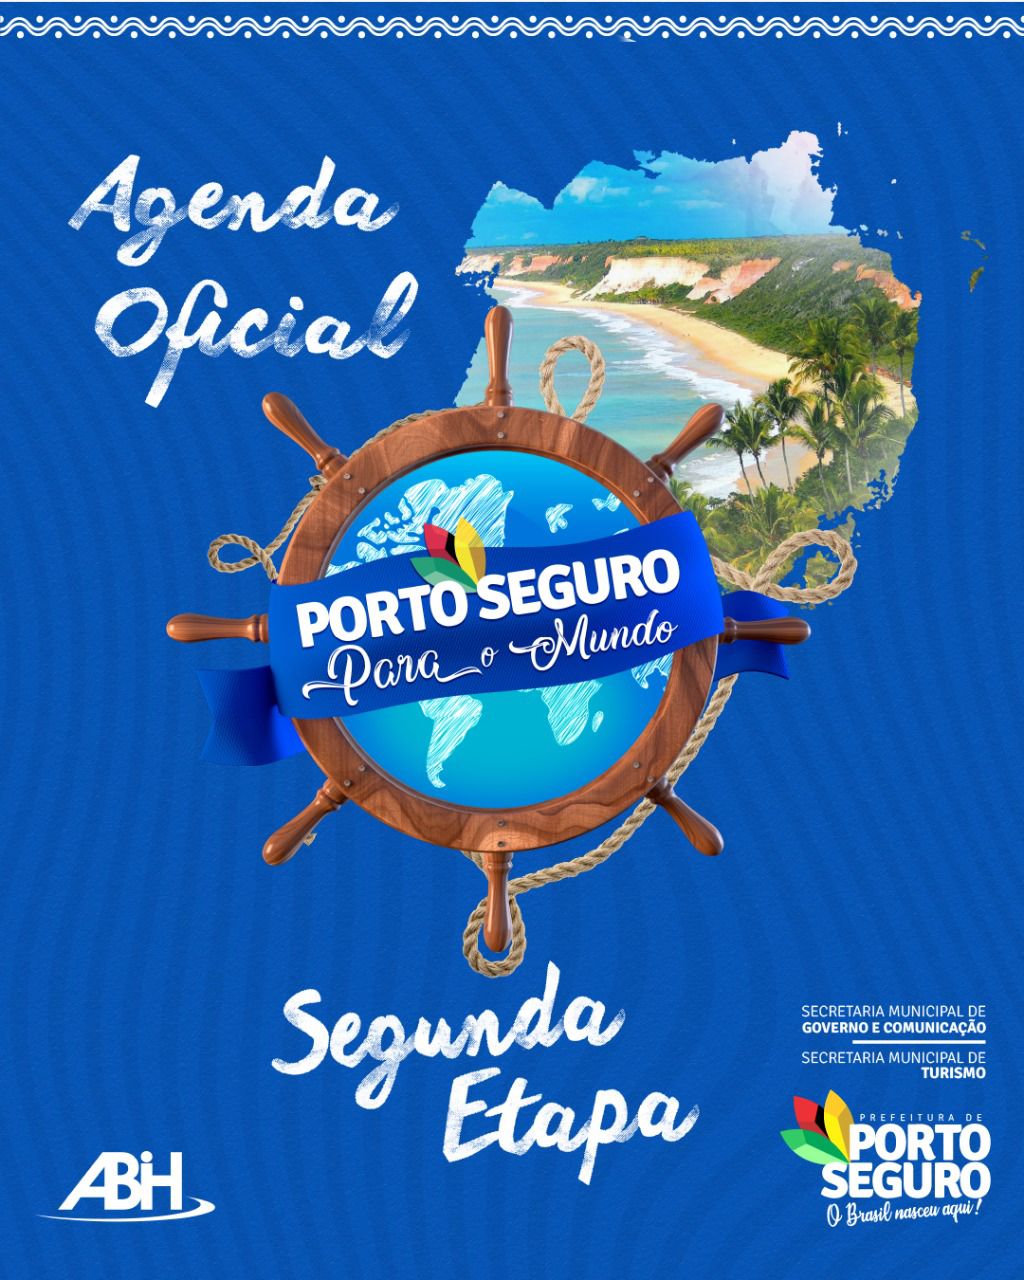 2ª Etapa da campanha “Porto Seguro para o mundo” entra em ação em maio, confira o que vem por aí! 81